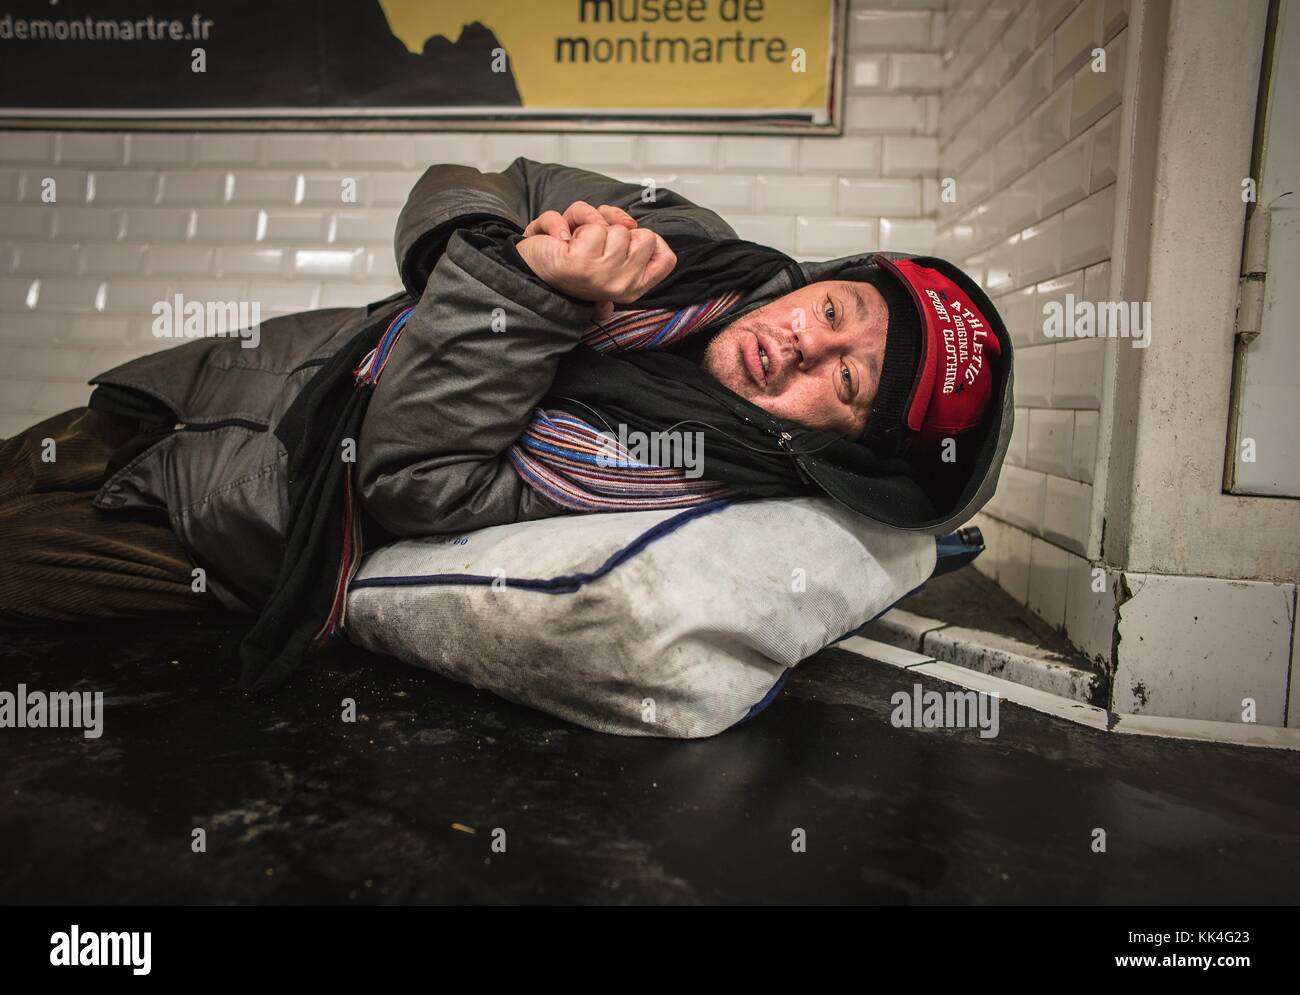 Prowling dans le métro - 23/01/2013 - - prowling dans le métro - Portrait d'une personne sans domicile surnommée « dede ». Qui vit dans le métro depuis plus de 16 ans. C'est un homme fragile et handicapé. Ce soir, il dort dans la station de métro Rues des Boulets - Sylvain Leser / le Pictorium Banque D'Images